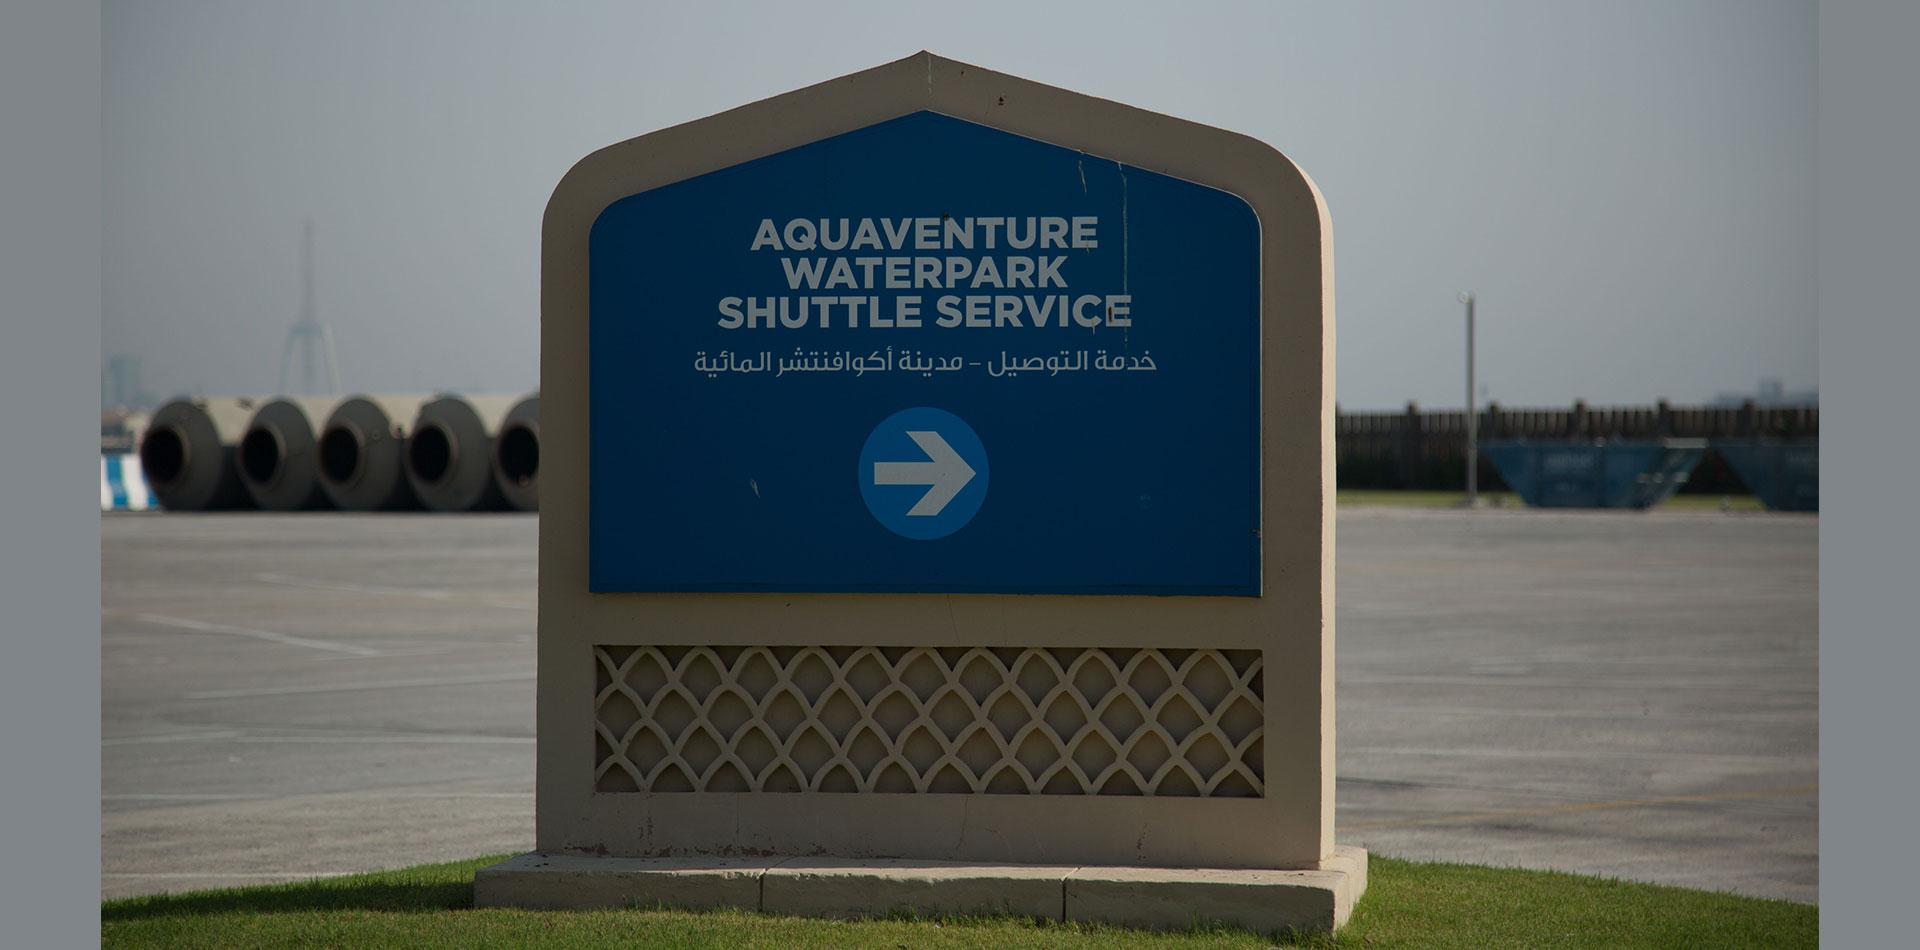 Monument Signage of Aquaventure Waterpark